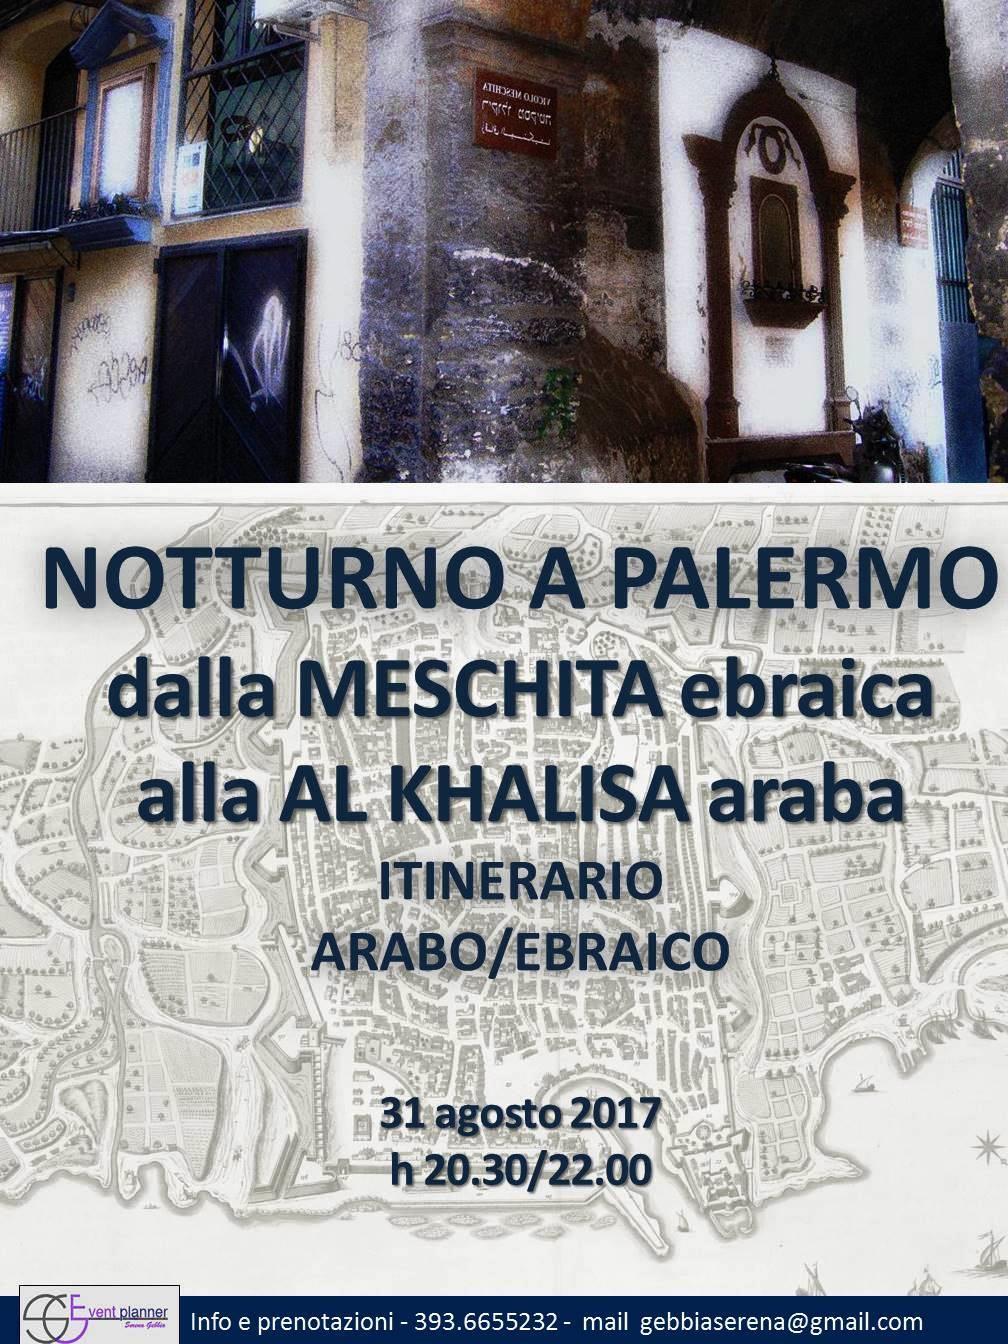 ebraismo e islamismo, culture a confronto visita guidata tra memorie dei vicoli del ghetto ebraico e della cittadella araba a Palermo, raccontando i luoghi della